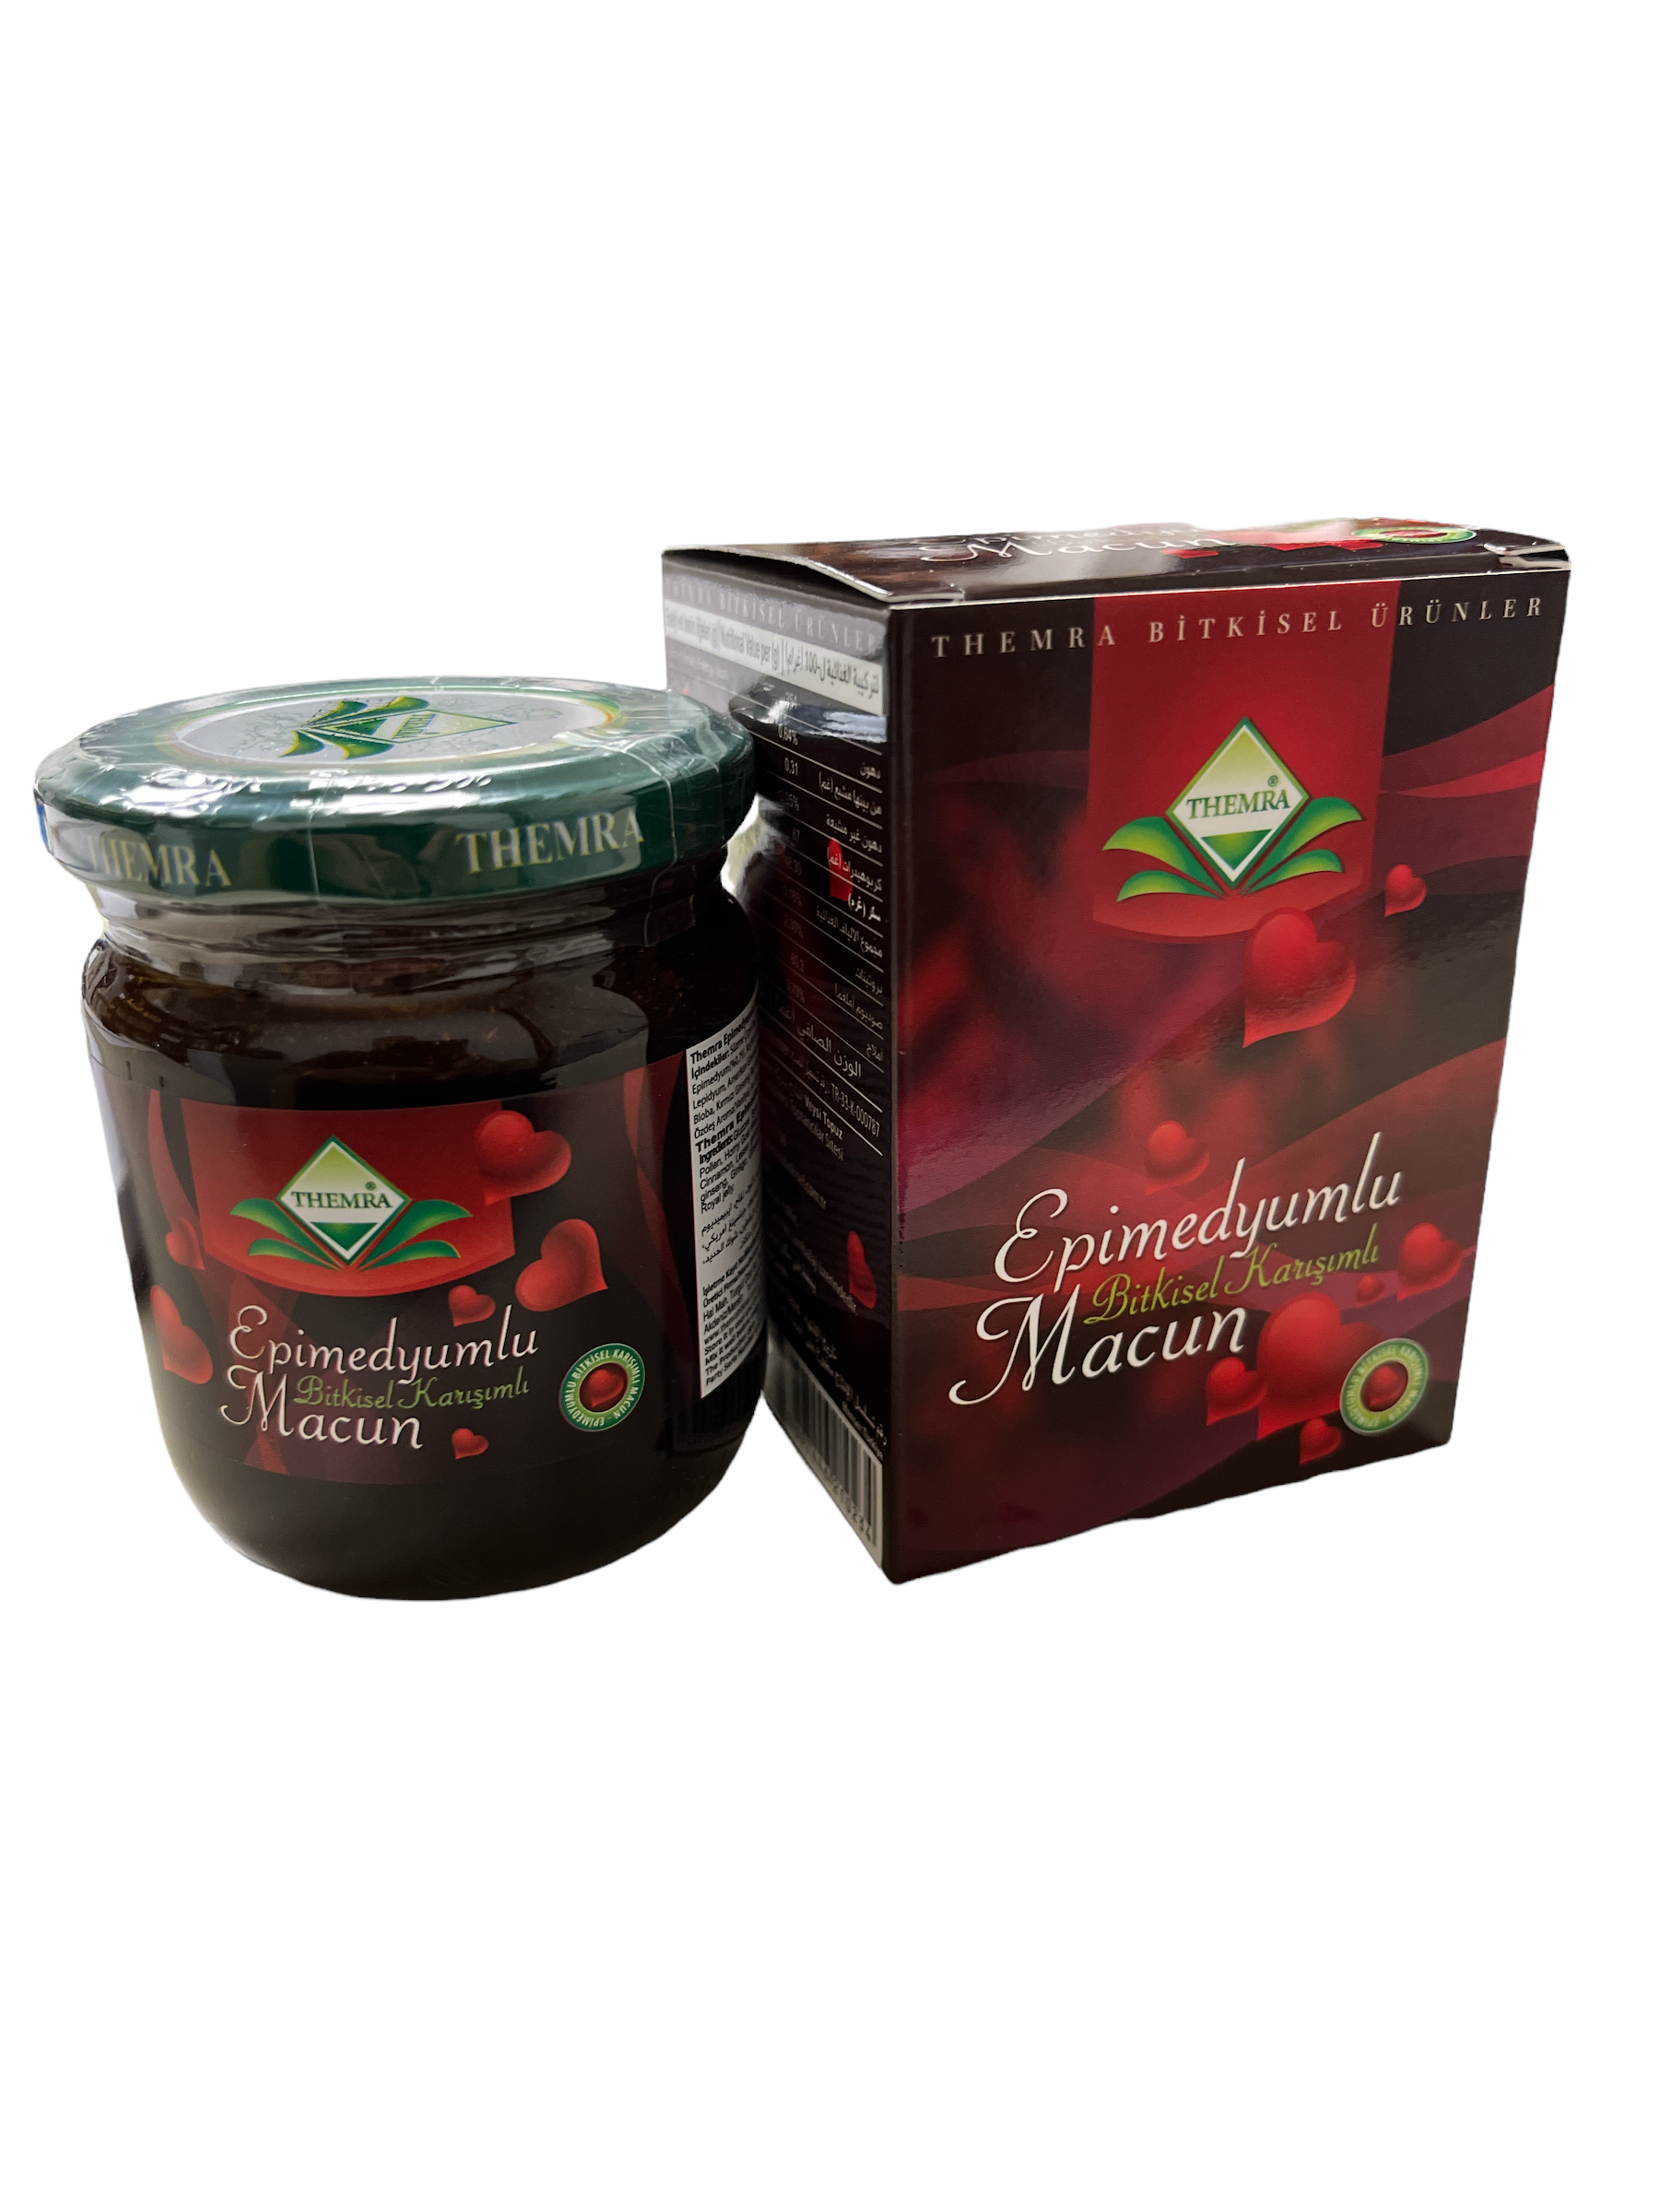 Macun Epimedium Herbal Mixt Paste Honey 240g –